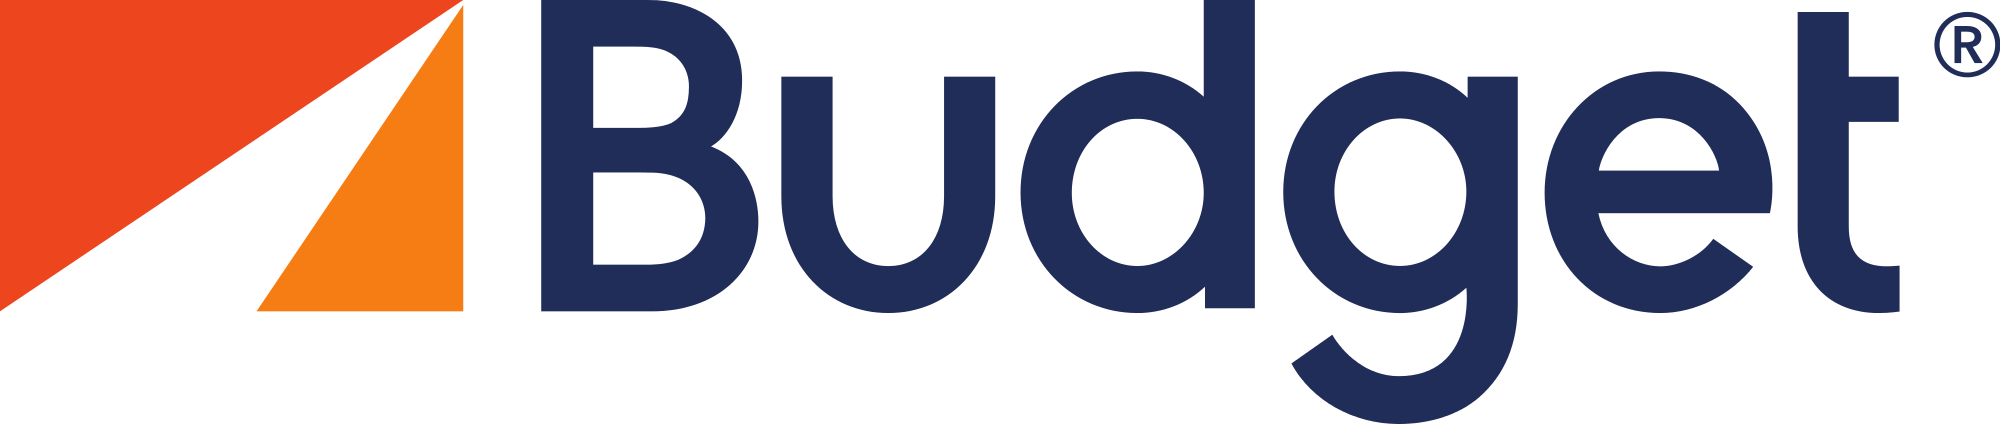 Budget Brand Logo